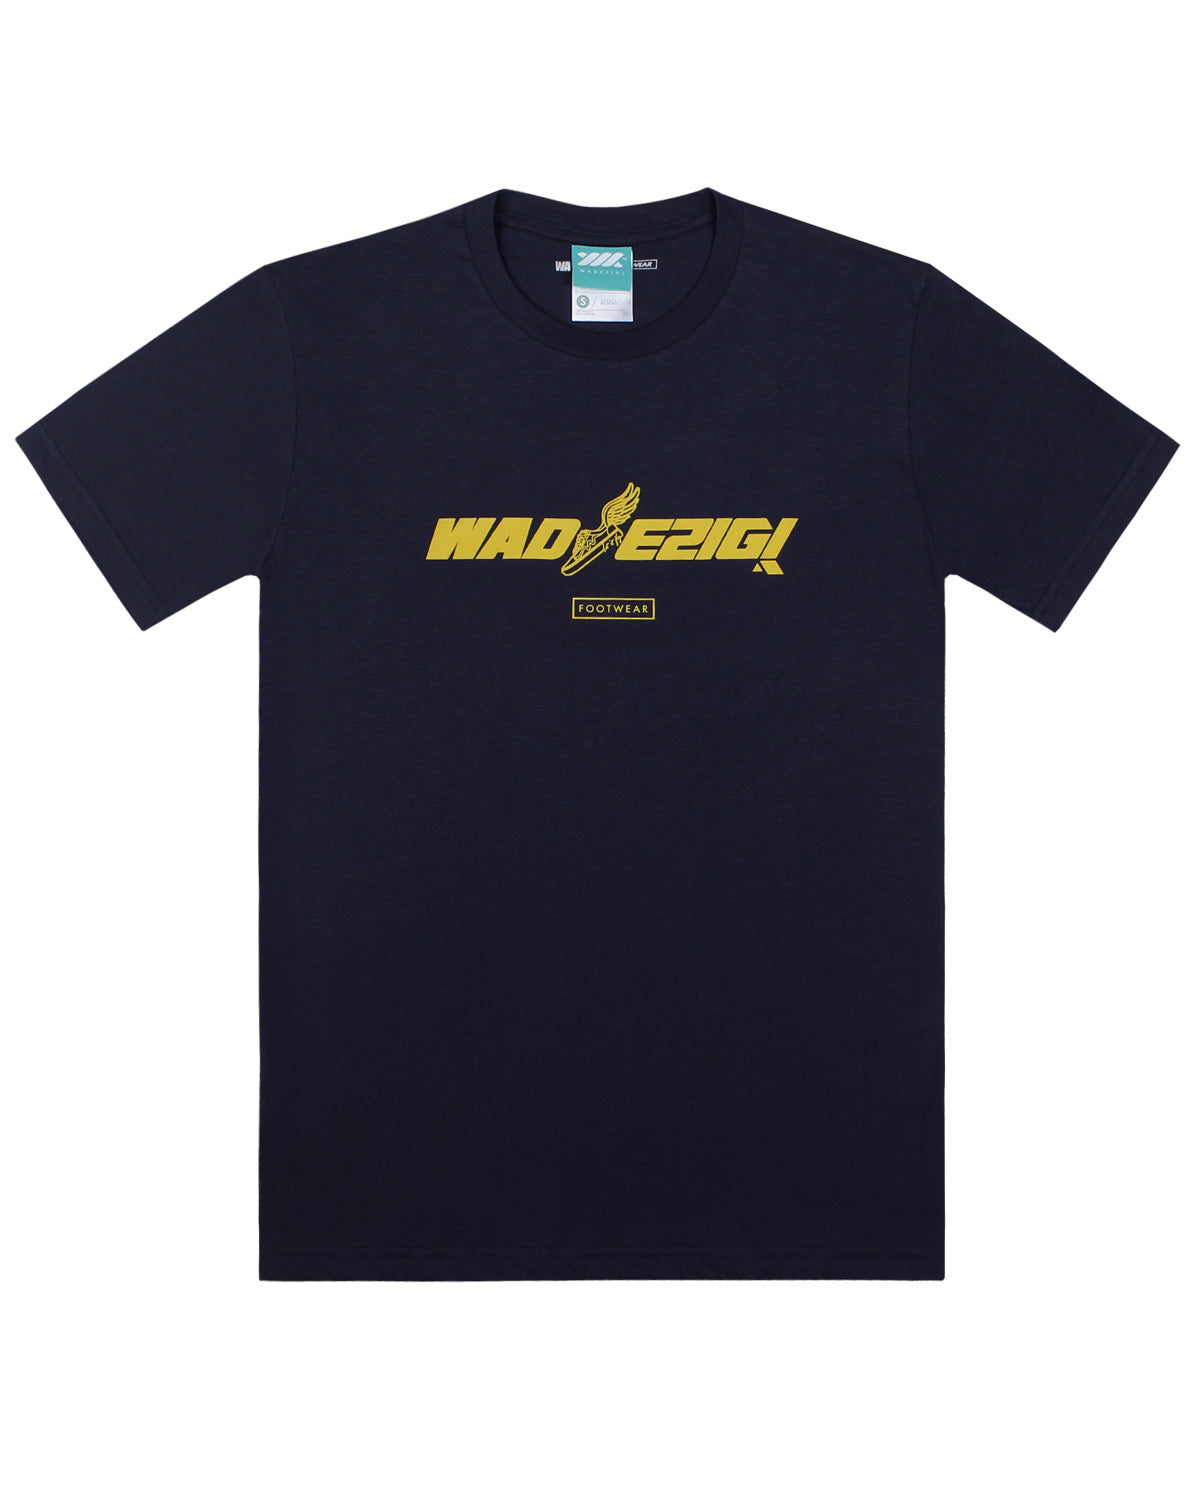 Wadezig! T-Shirt - Freedom Tee Navy